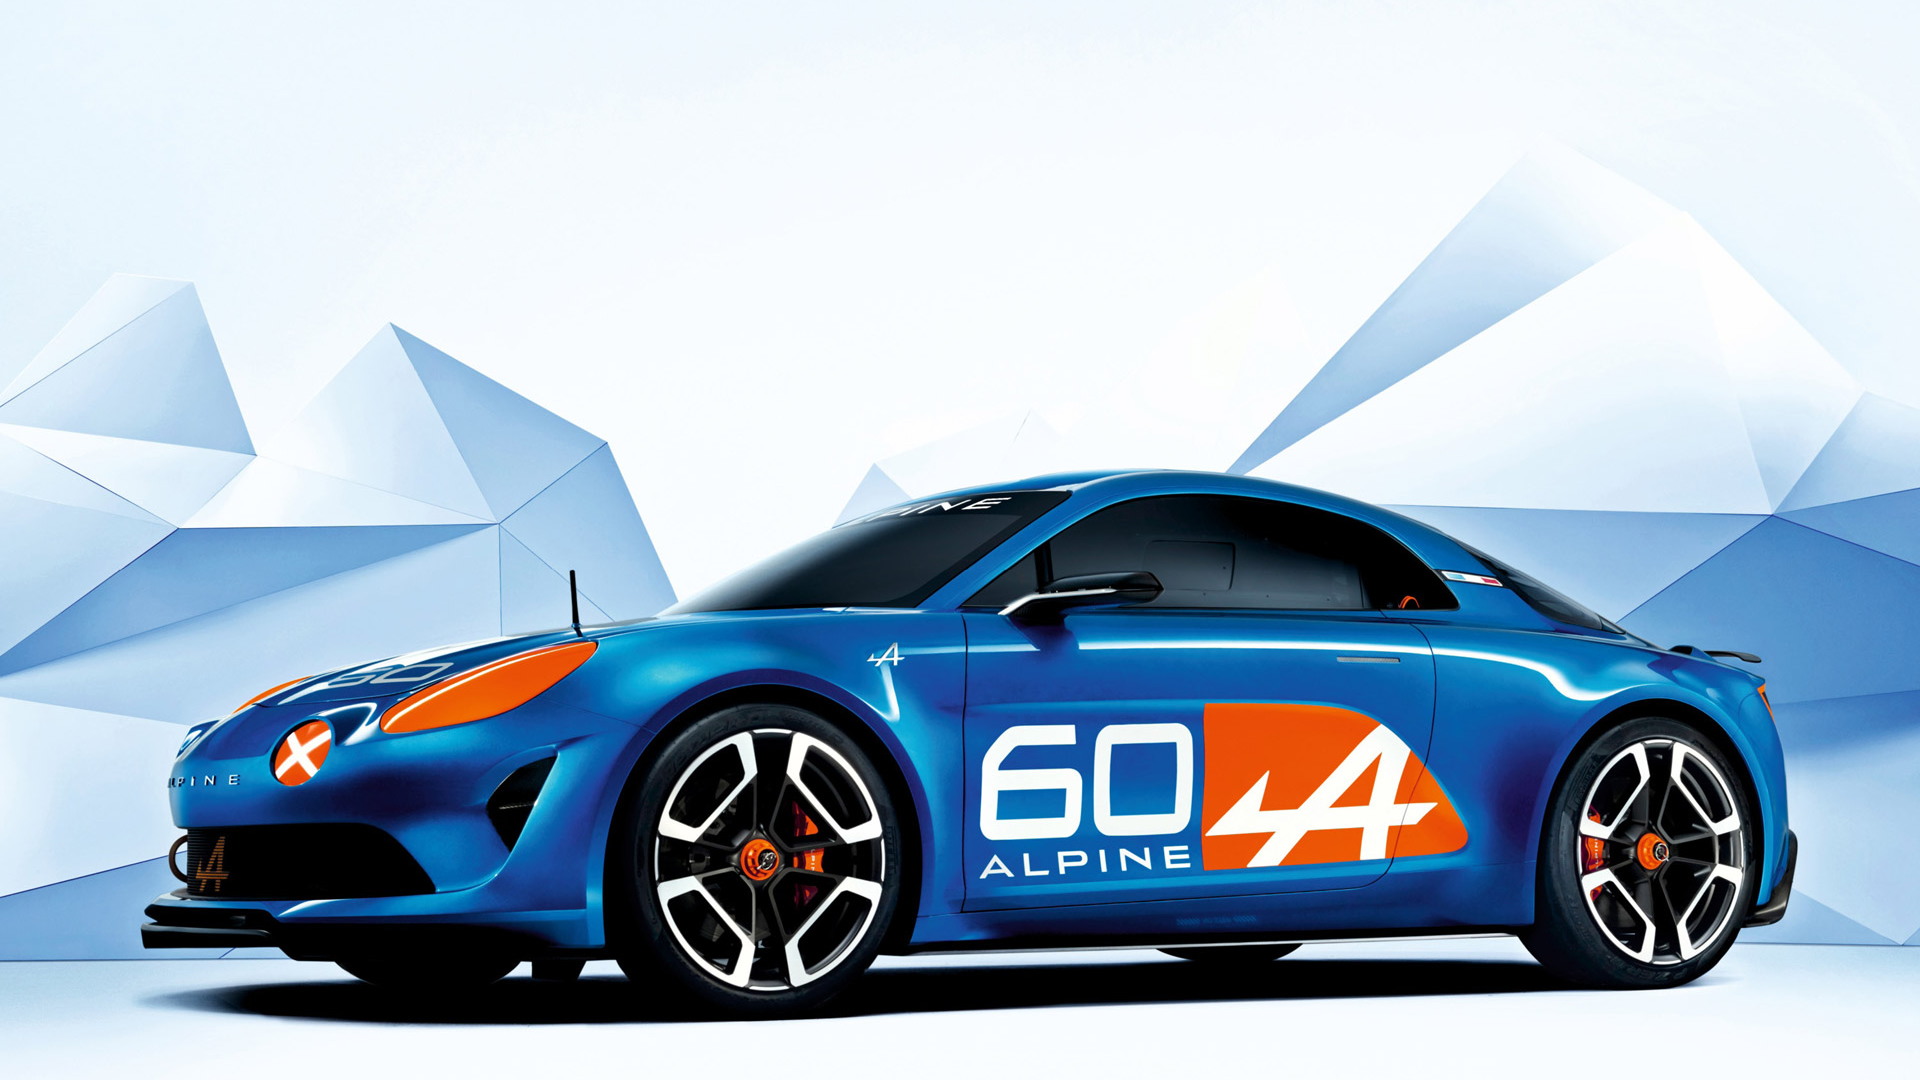 Alpine Celebration concept, 2015 24 Hours of Le Mans